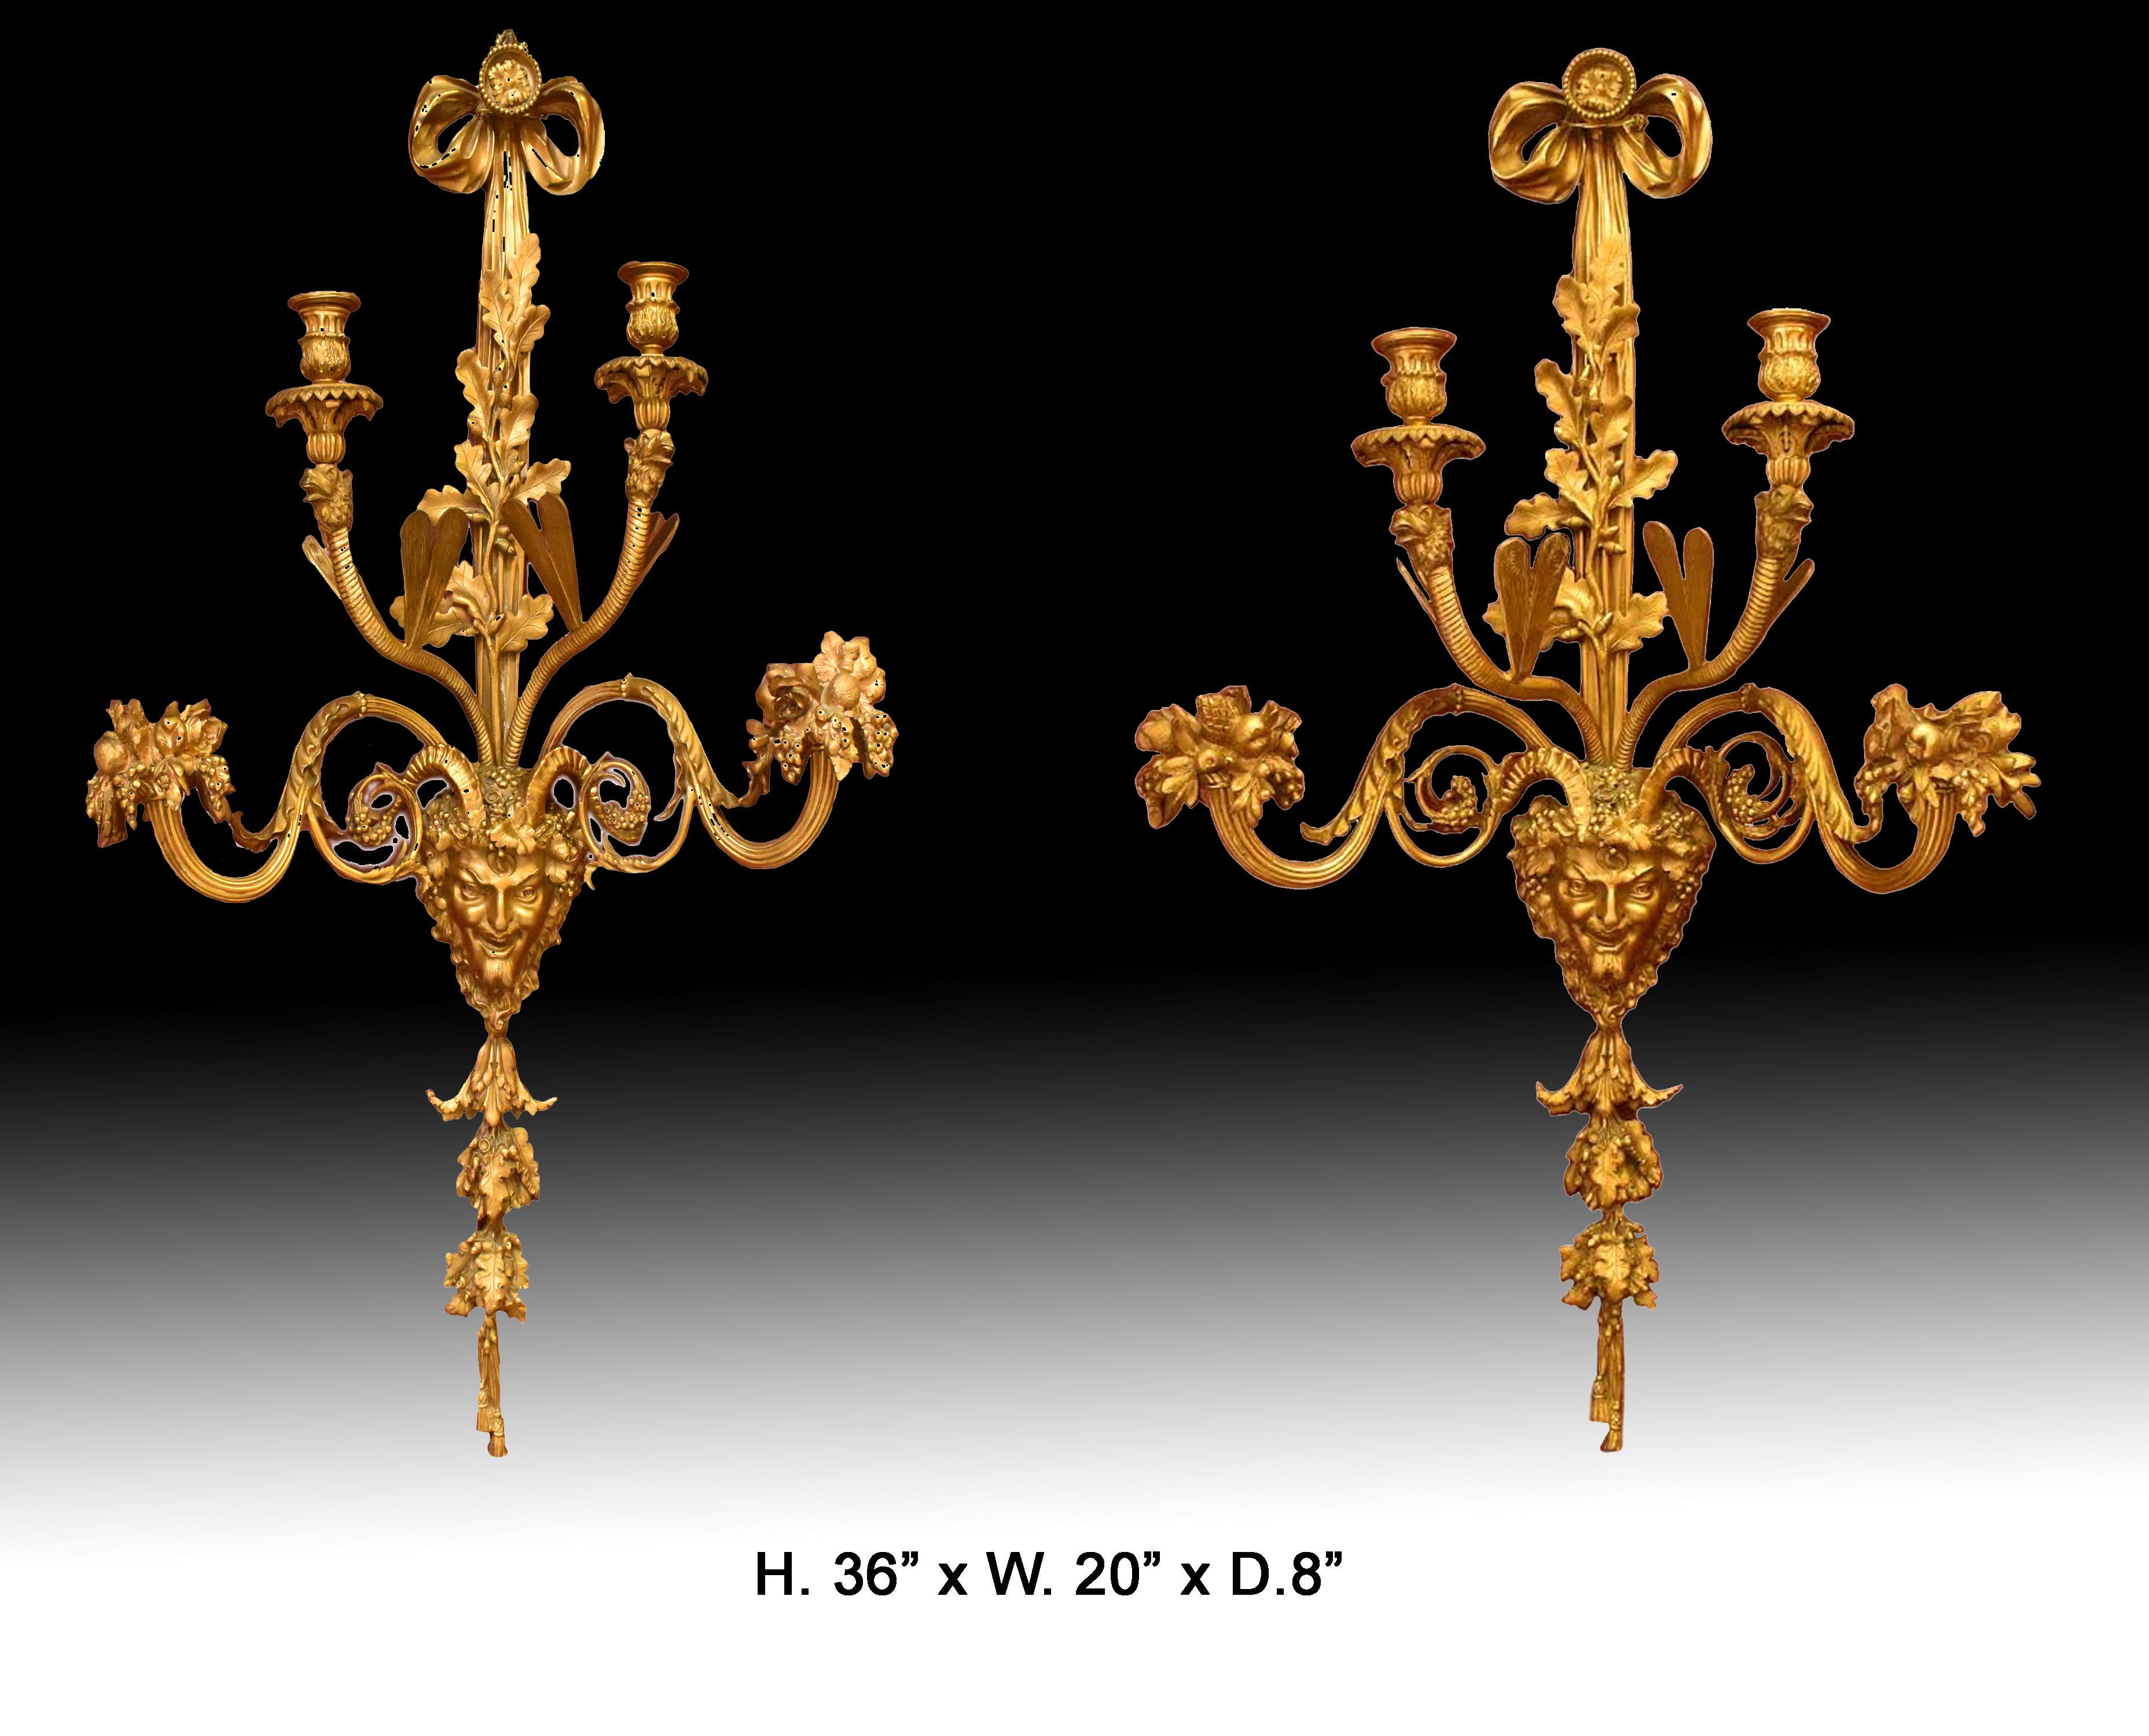 Exquise paire d'appliques à 4 lumières de style Louis XV du 19ème siècle.
Chacune d'elles est surmontée d'un ruban, au-dessus d'un feuillage complexe en bronze doré et d'un masque mythique, et de deux bras de candélabre anglés avec des ailes de